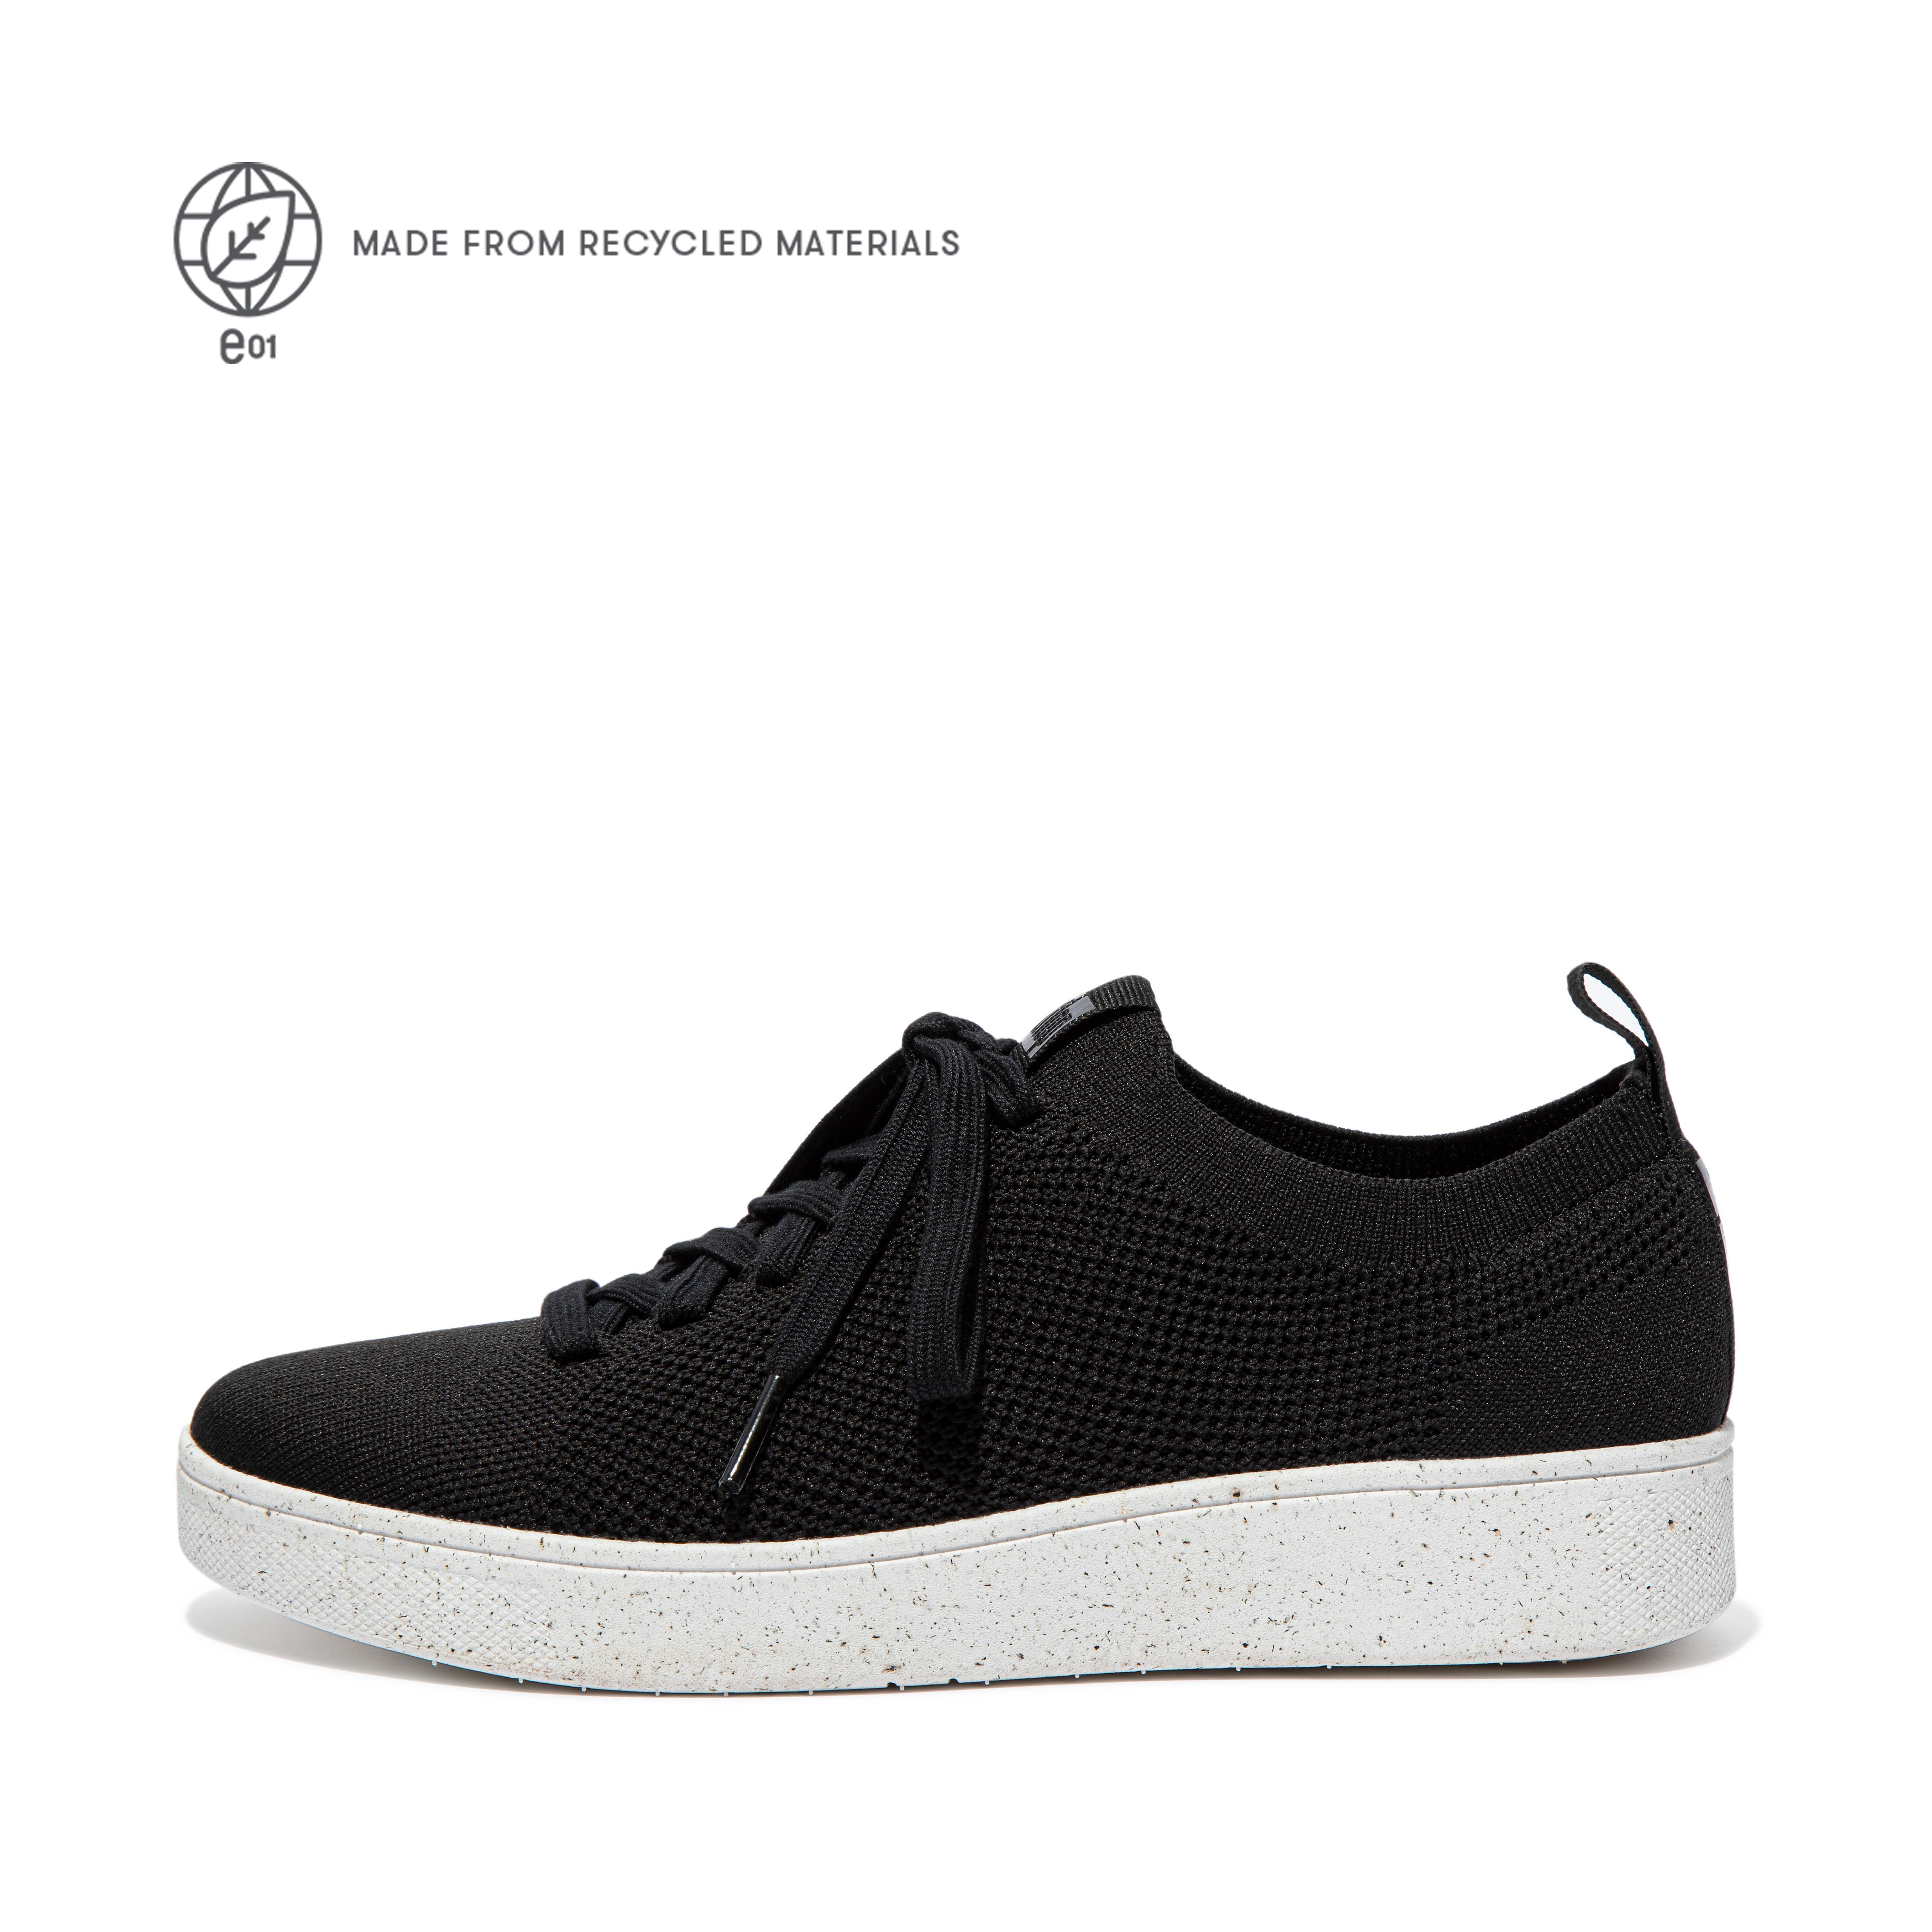 핏플랍 스니커즈 FitFlop RALLY e01 Multi-Knit Sneakers,Black